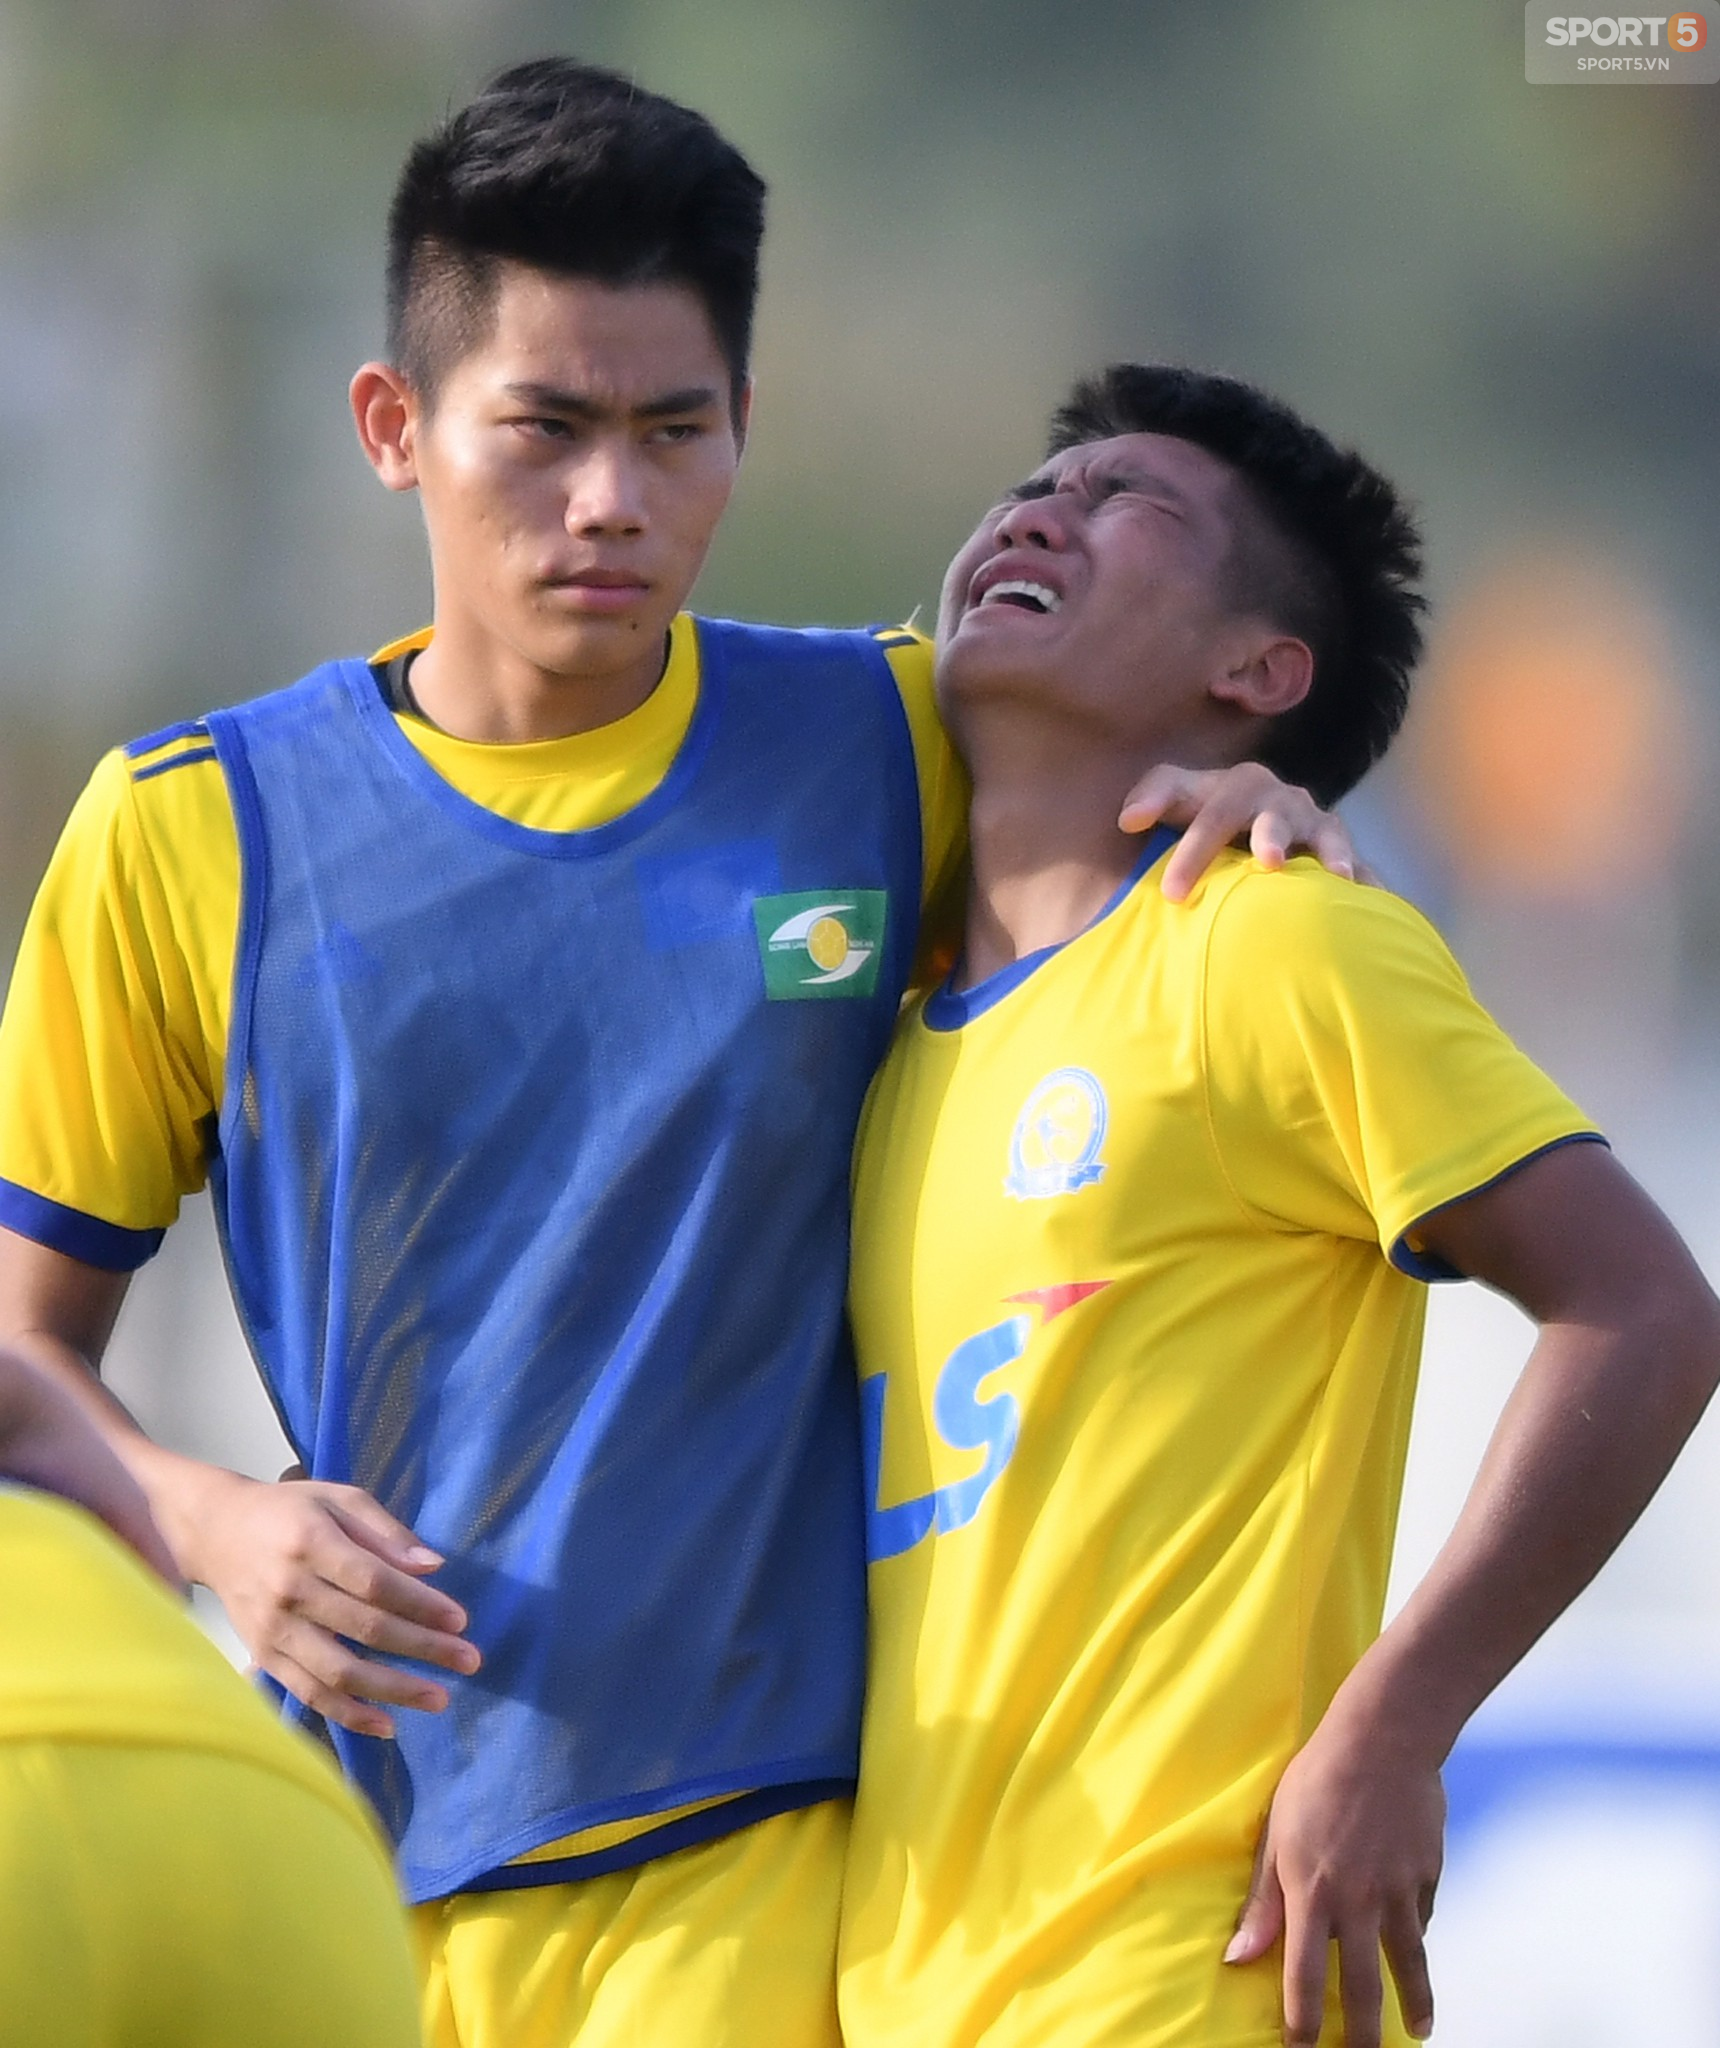 Giọt nước mắt thua cuộc trái chiều niềm vui chiến thắng trong trận chung kết U17 Quốc gia 2018 - Ảnh 8.